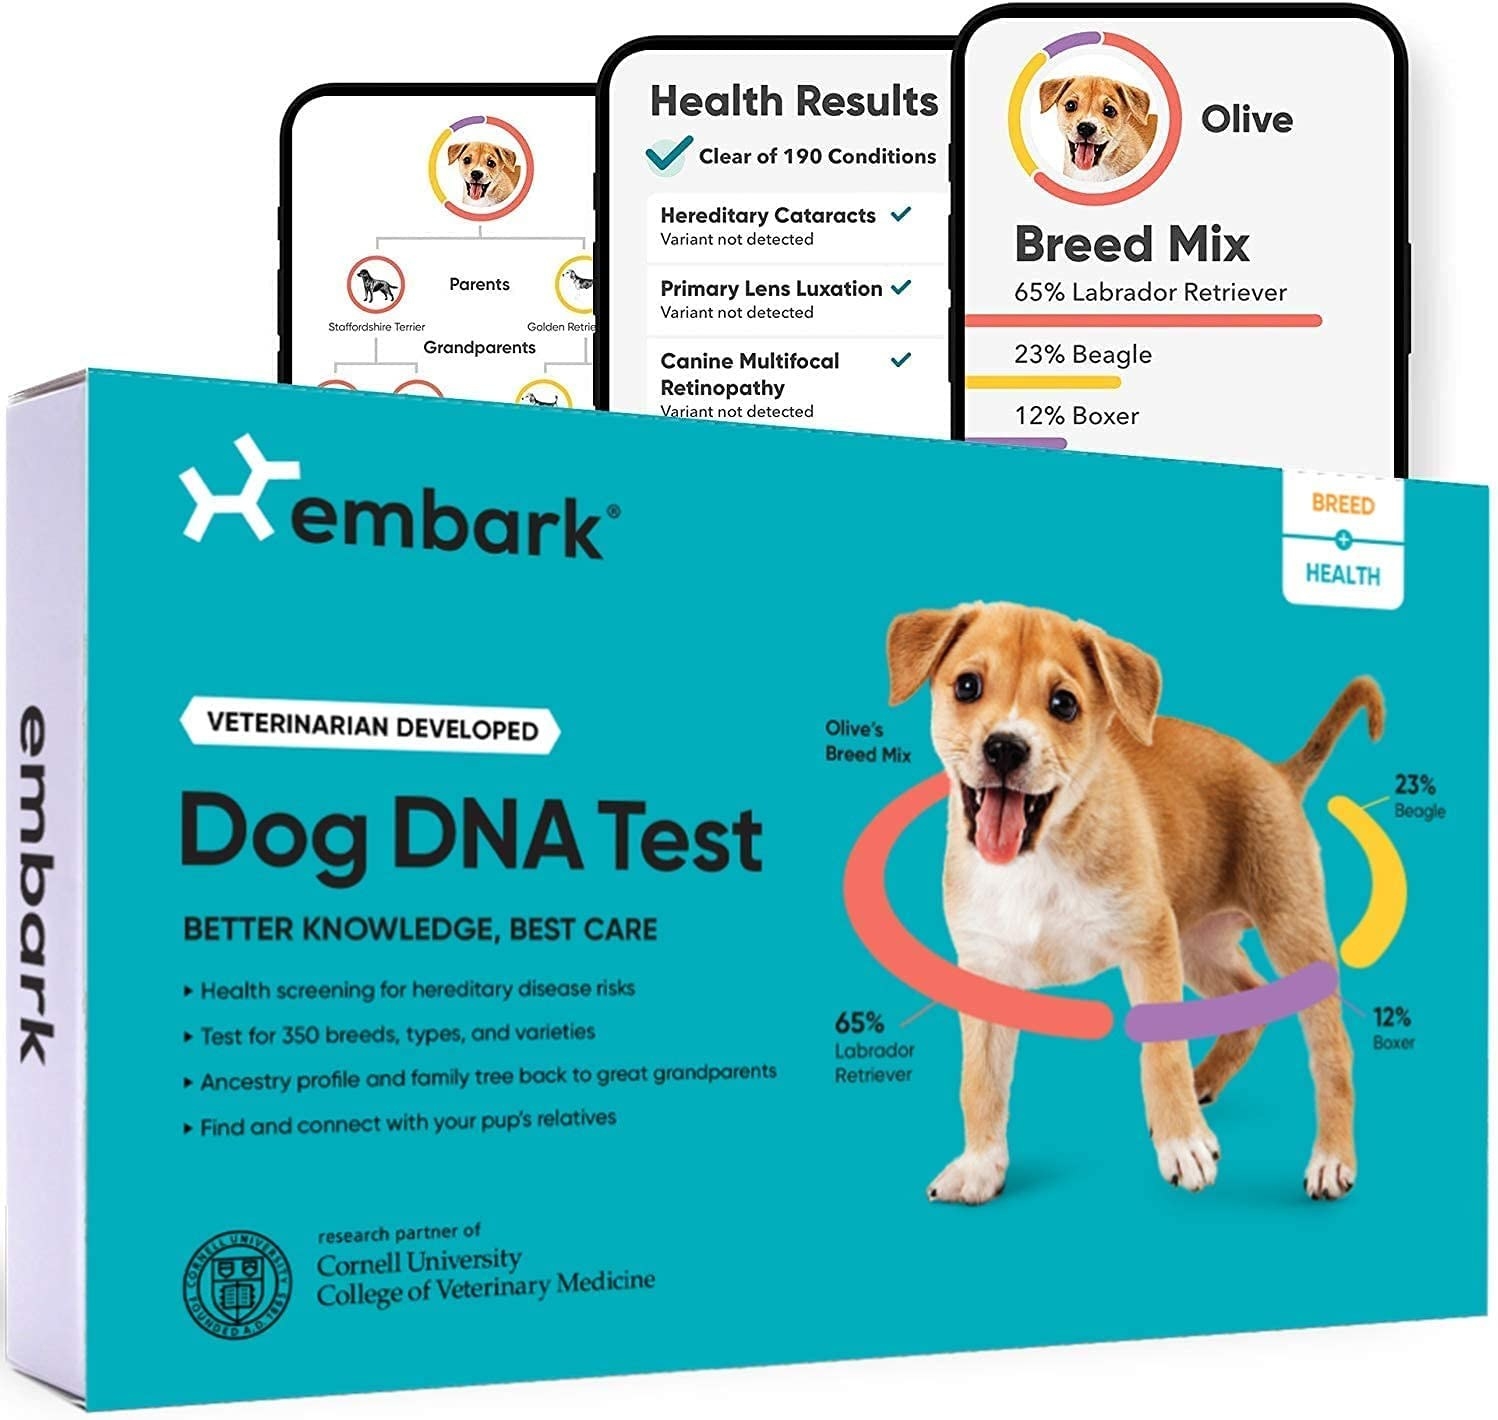 Image of the teal dog DNA test kit